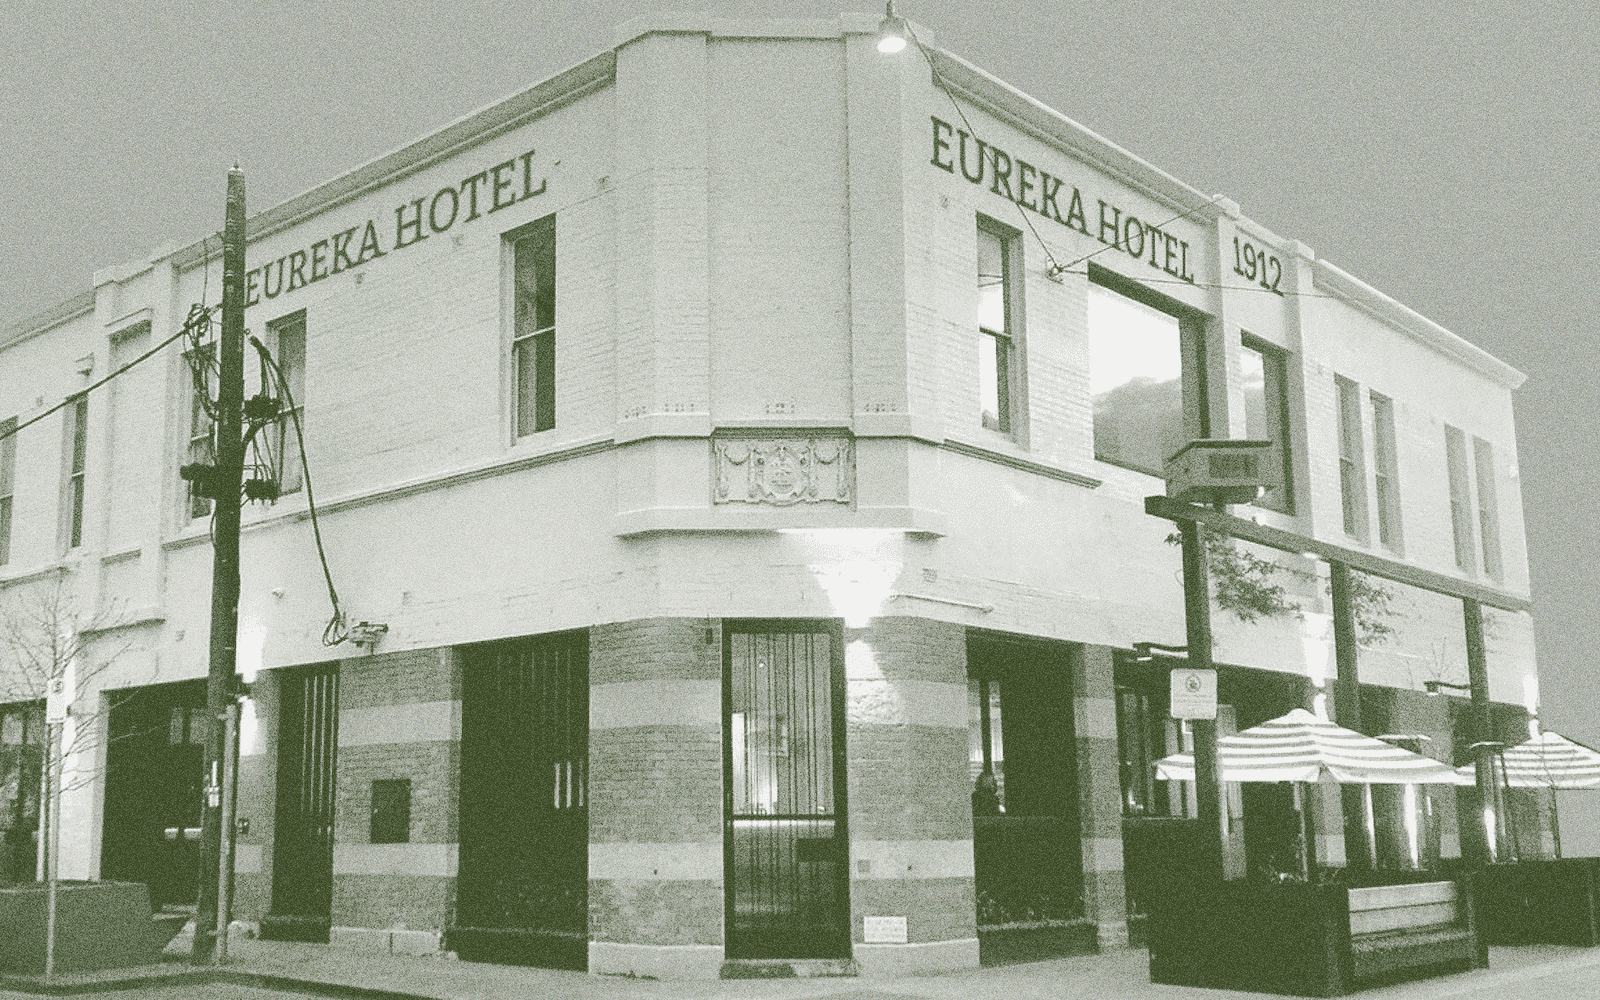 eureka hotel